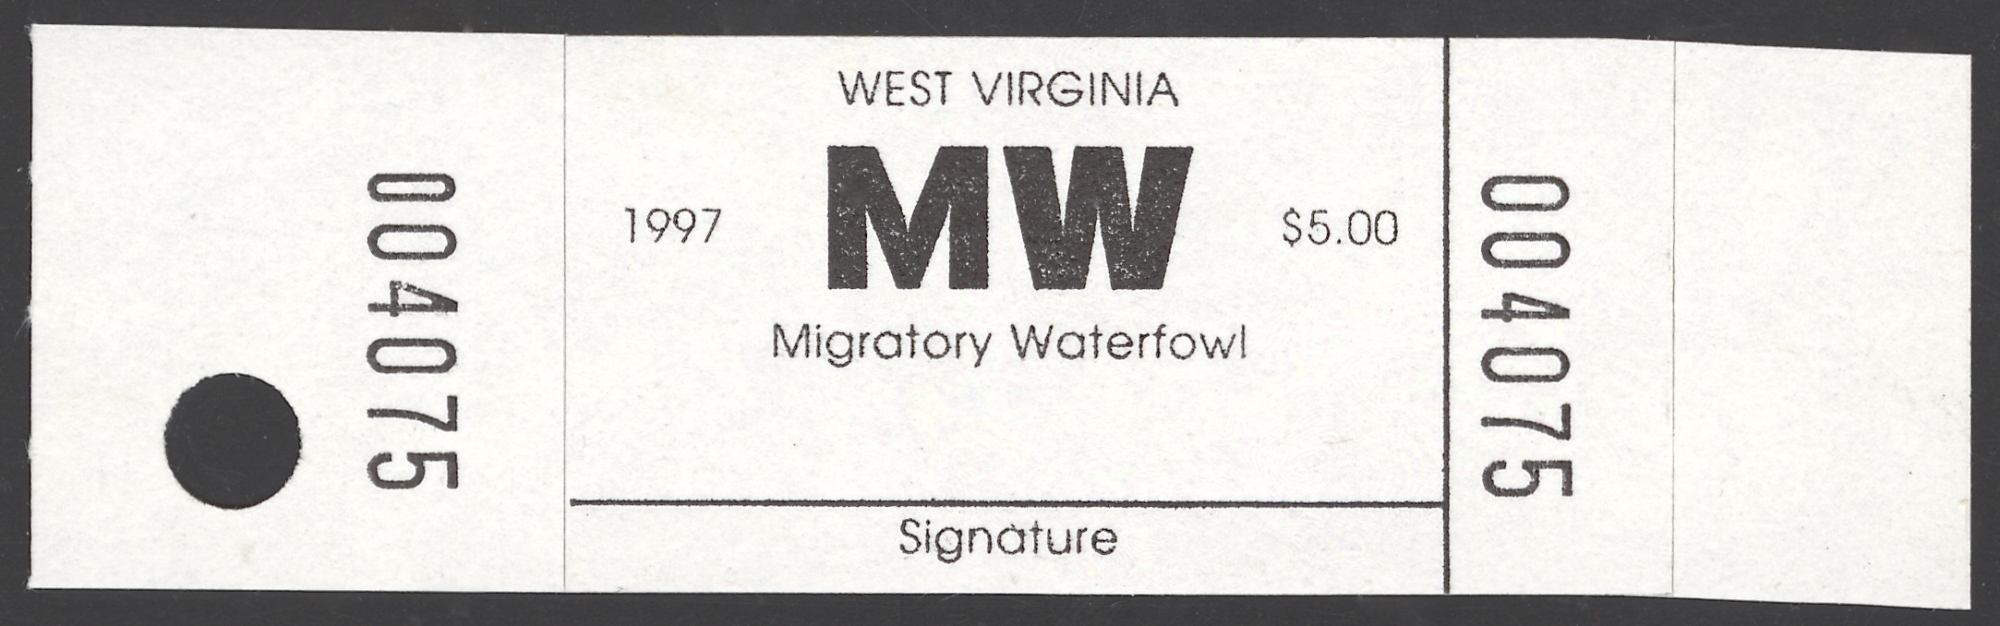 1997 West Virginia Migratory Waterfowl